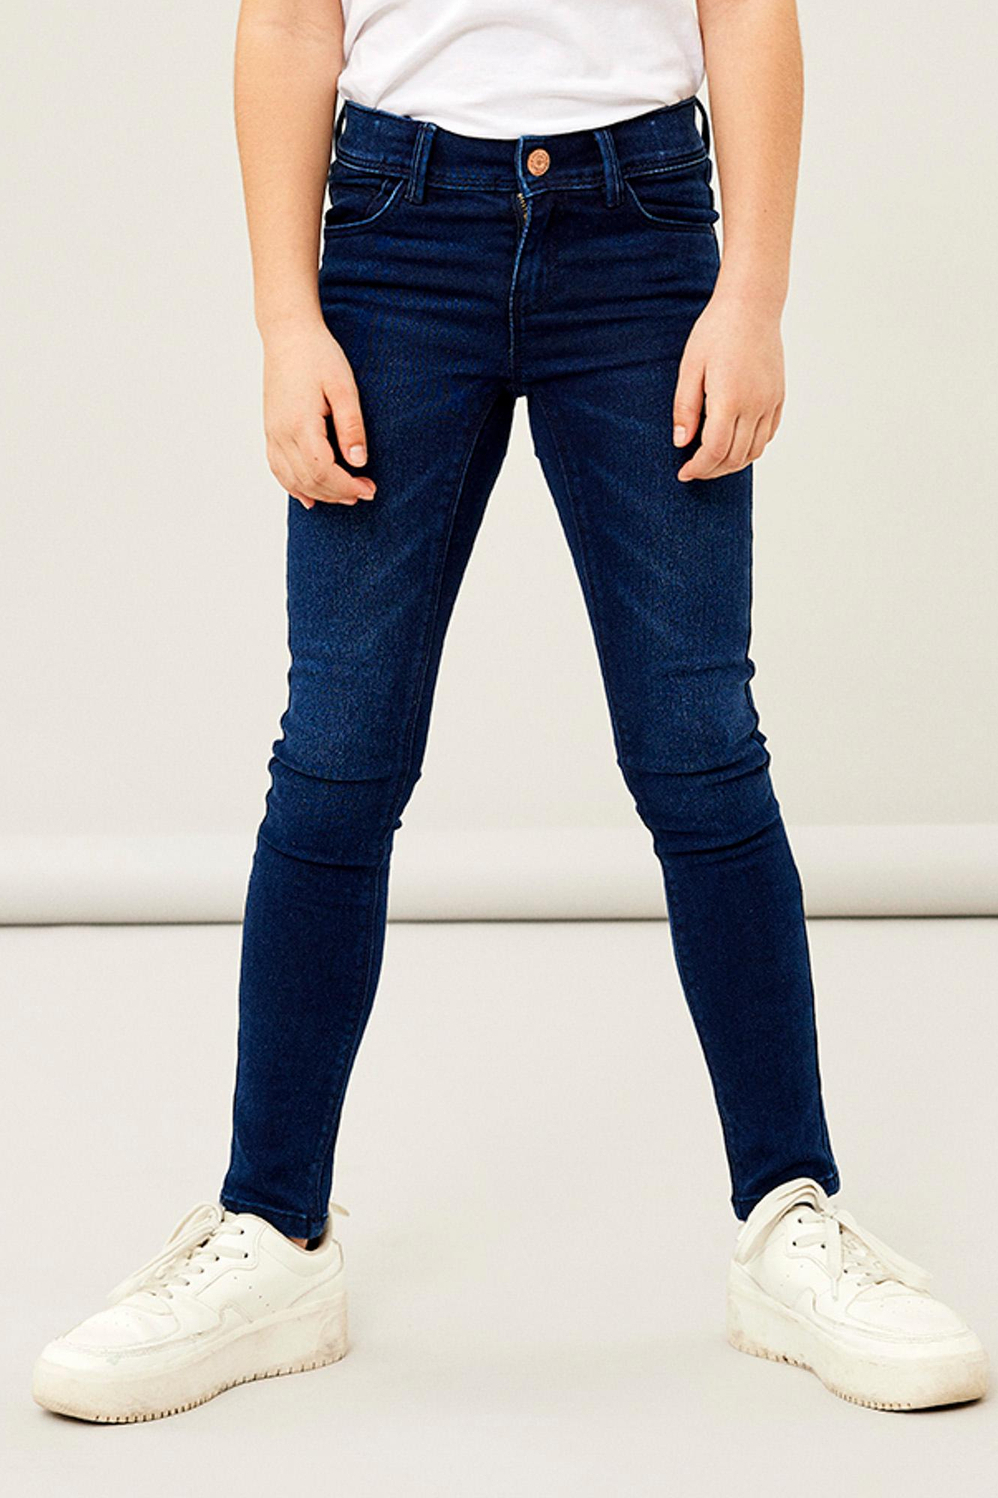 bewonderen krans Onbevredigend nkfpolly skinny jeans 1212-tx noos 13210232 name it jeans dark blue denim